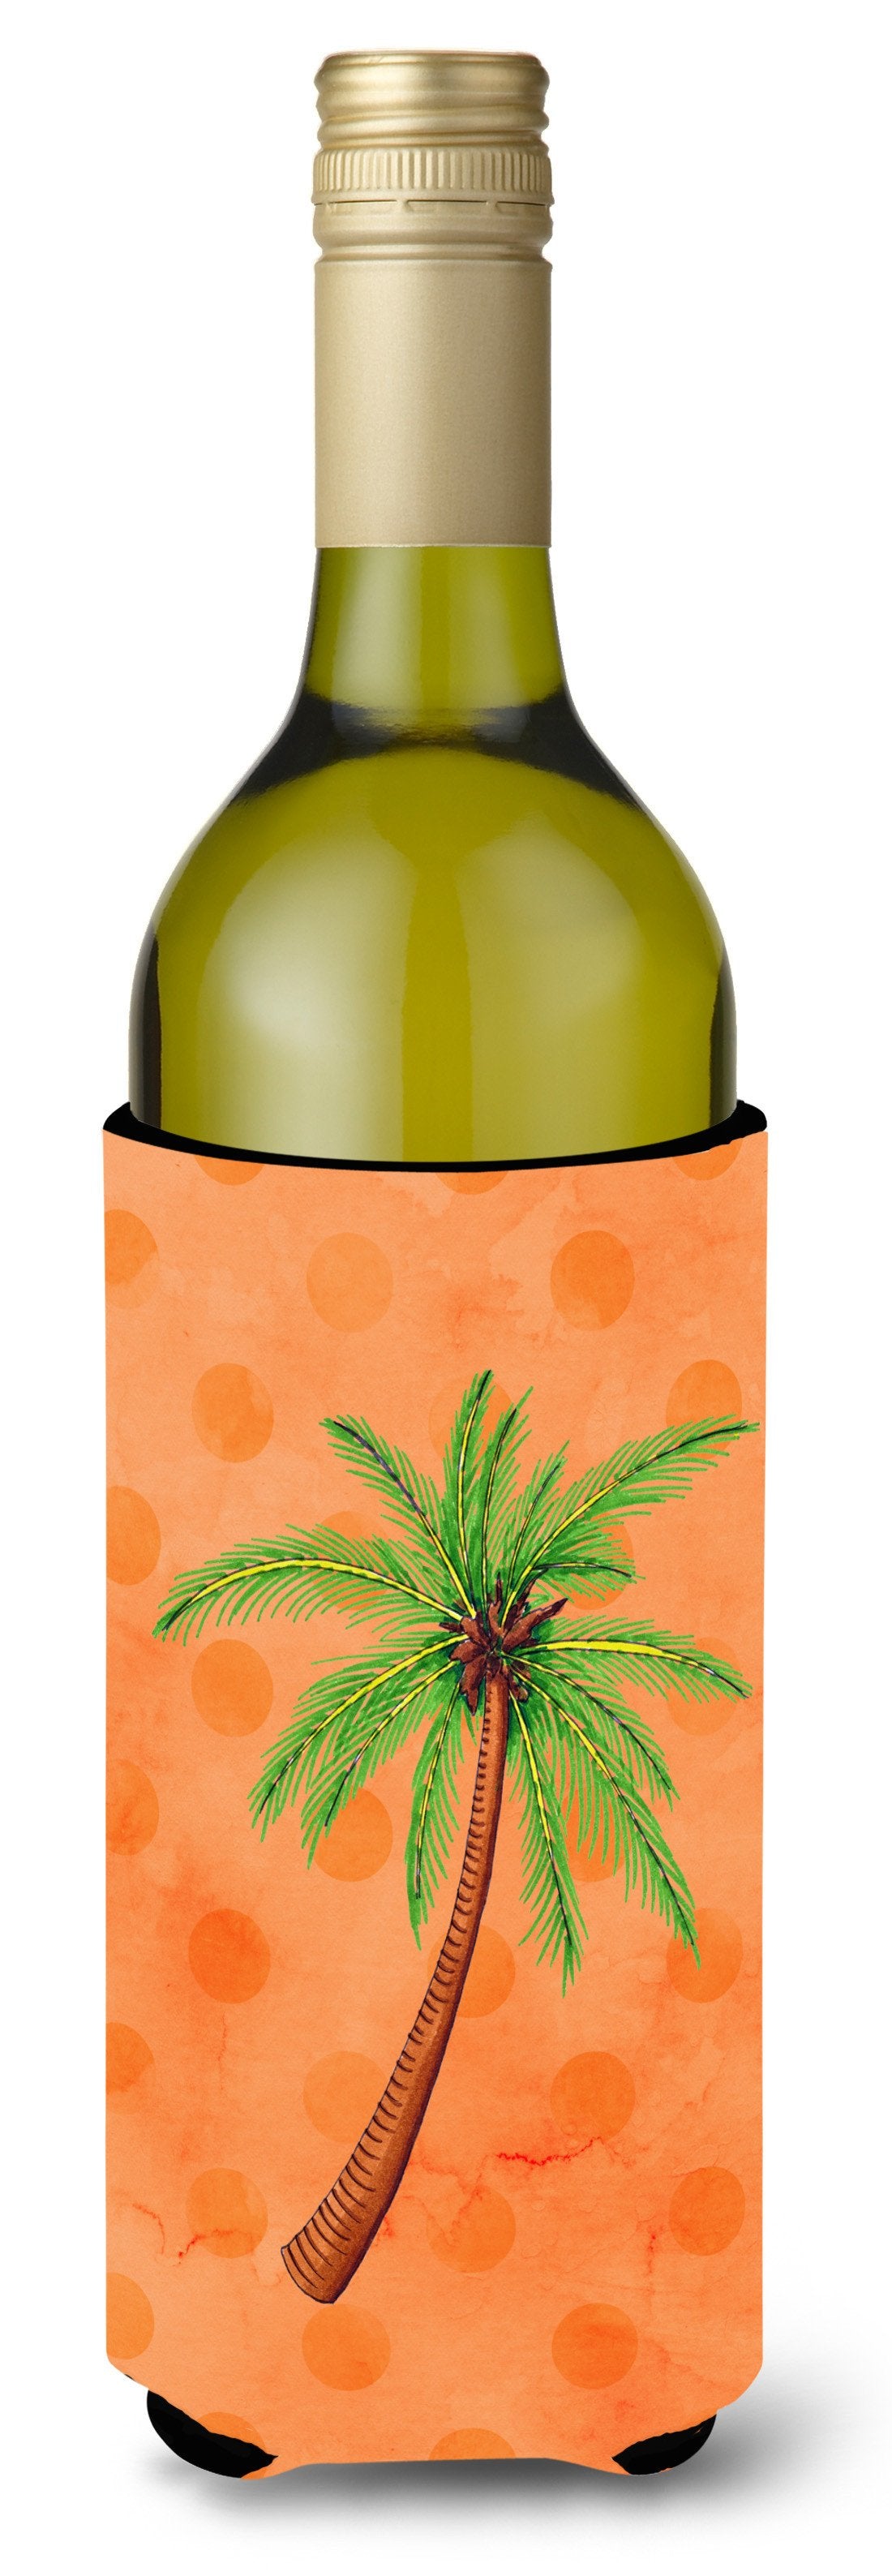 Palm Tree Orange Polkadot Wine Bottle Beverge Insulator Hugger BB8168LITERK by Caroline's Treasures